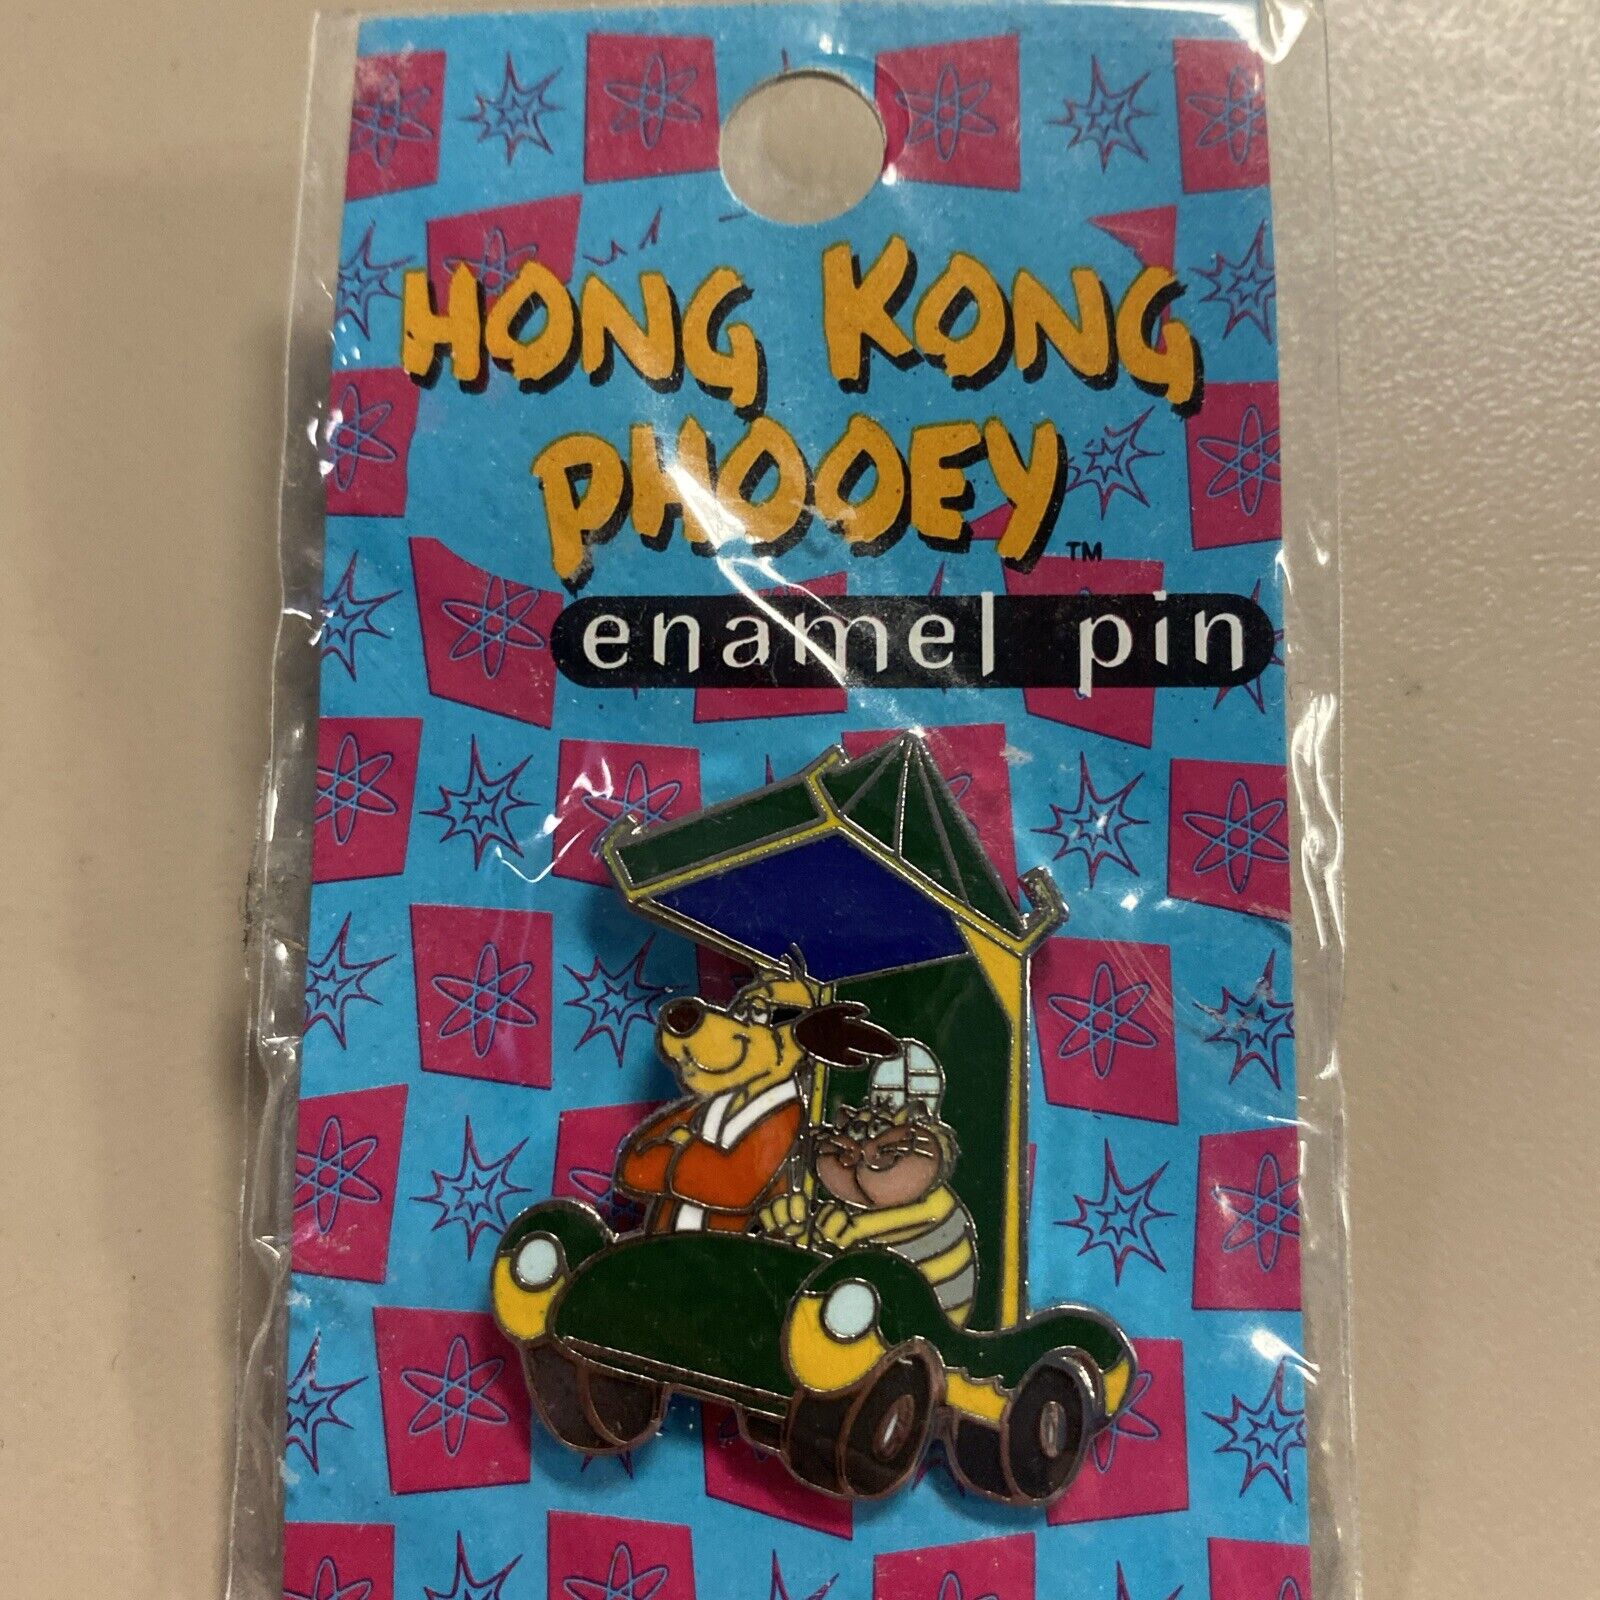 Hong Kong Phooey Warner Bros Studio Store Enamel Pin Vintage Hanna Barbera